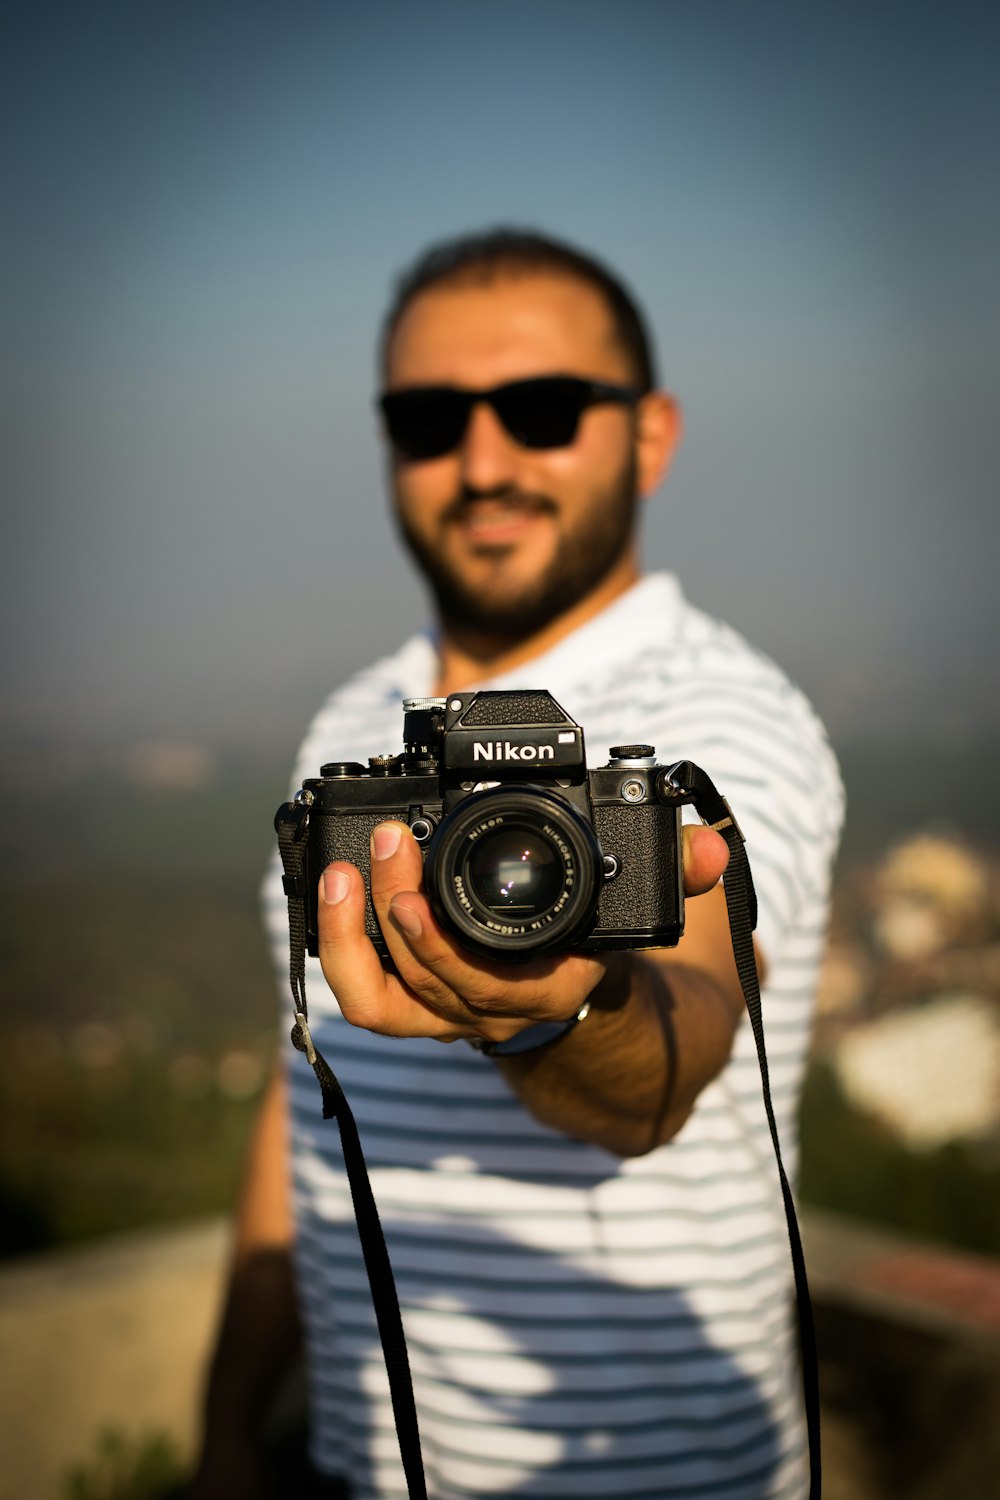 persona sosteniendo una cámara Nikon DSLR negra